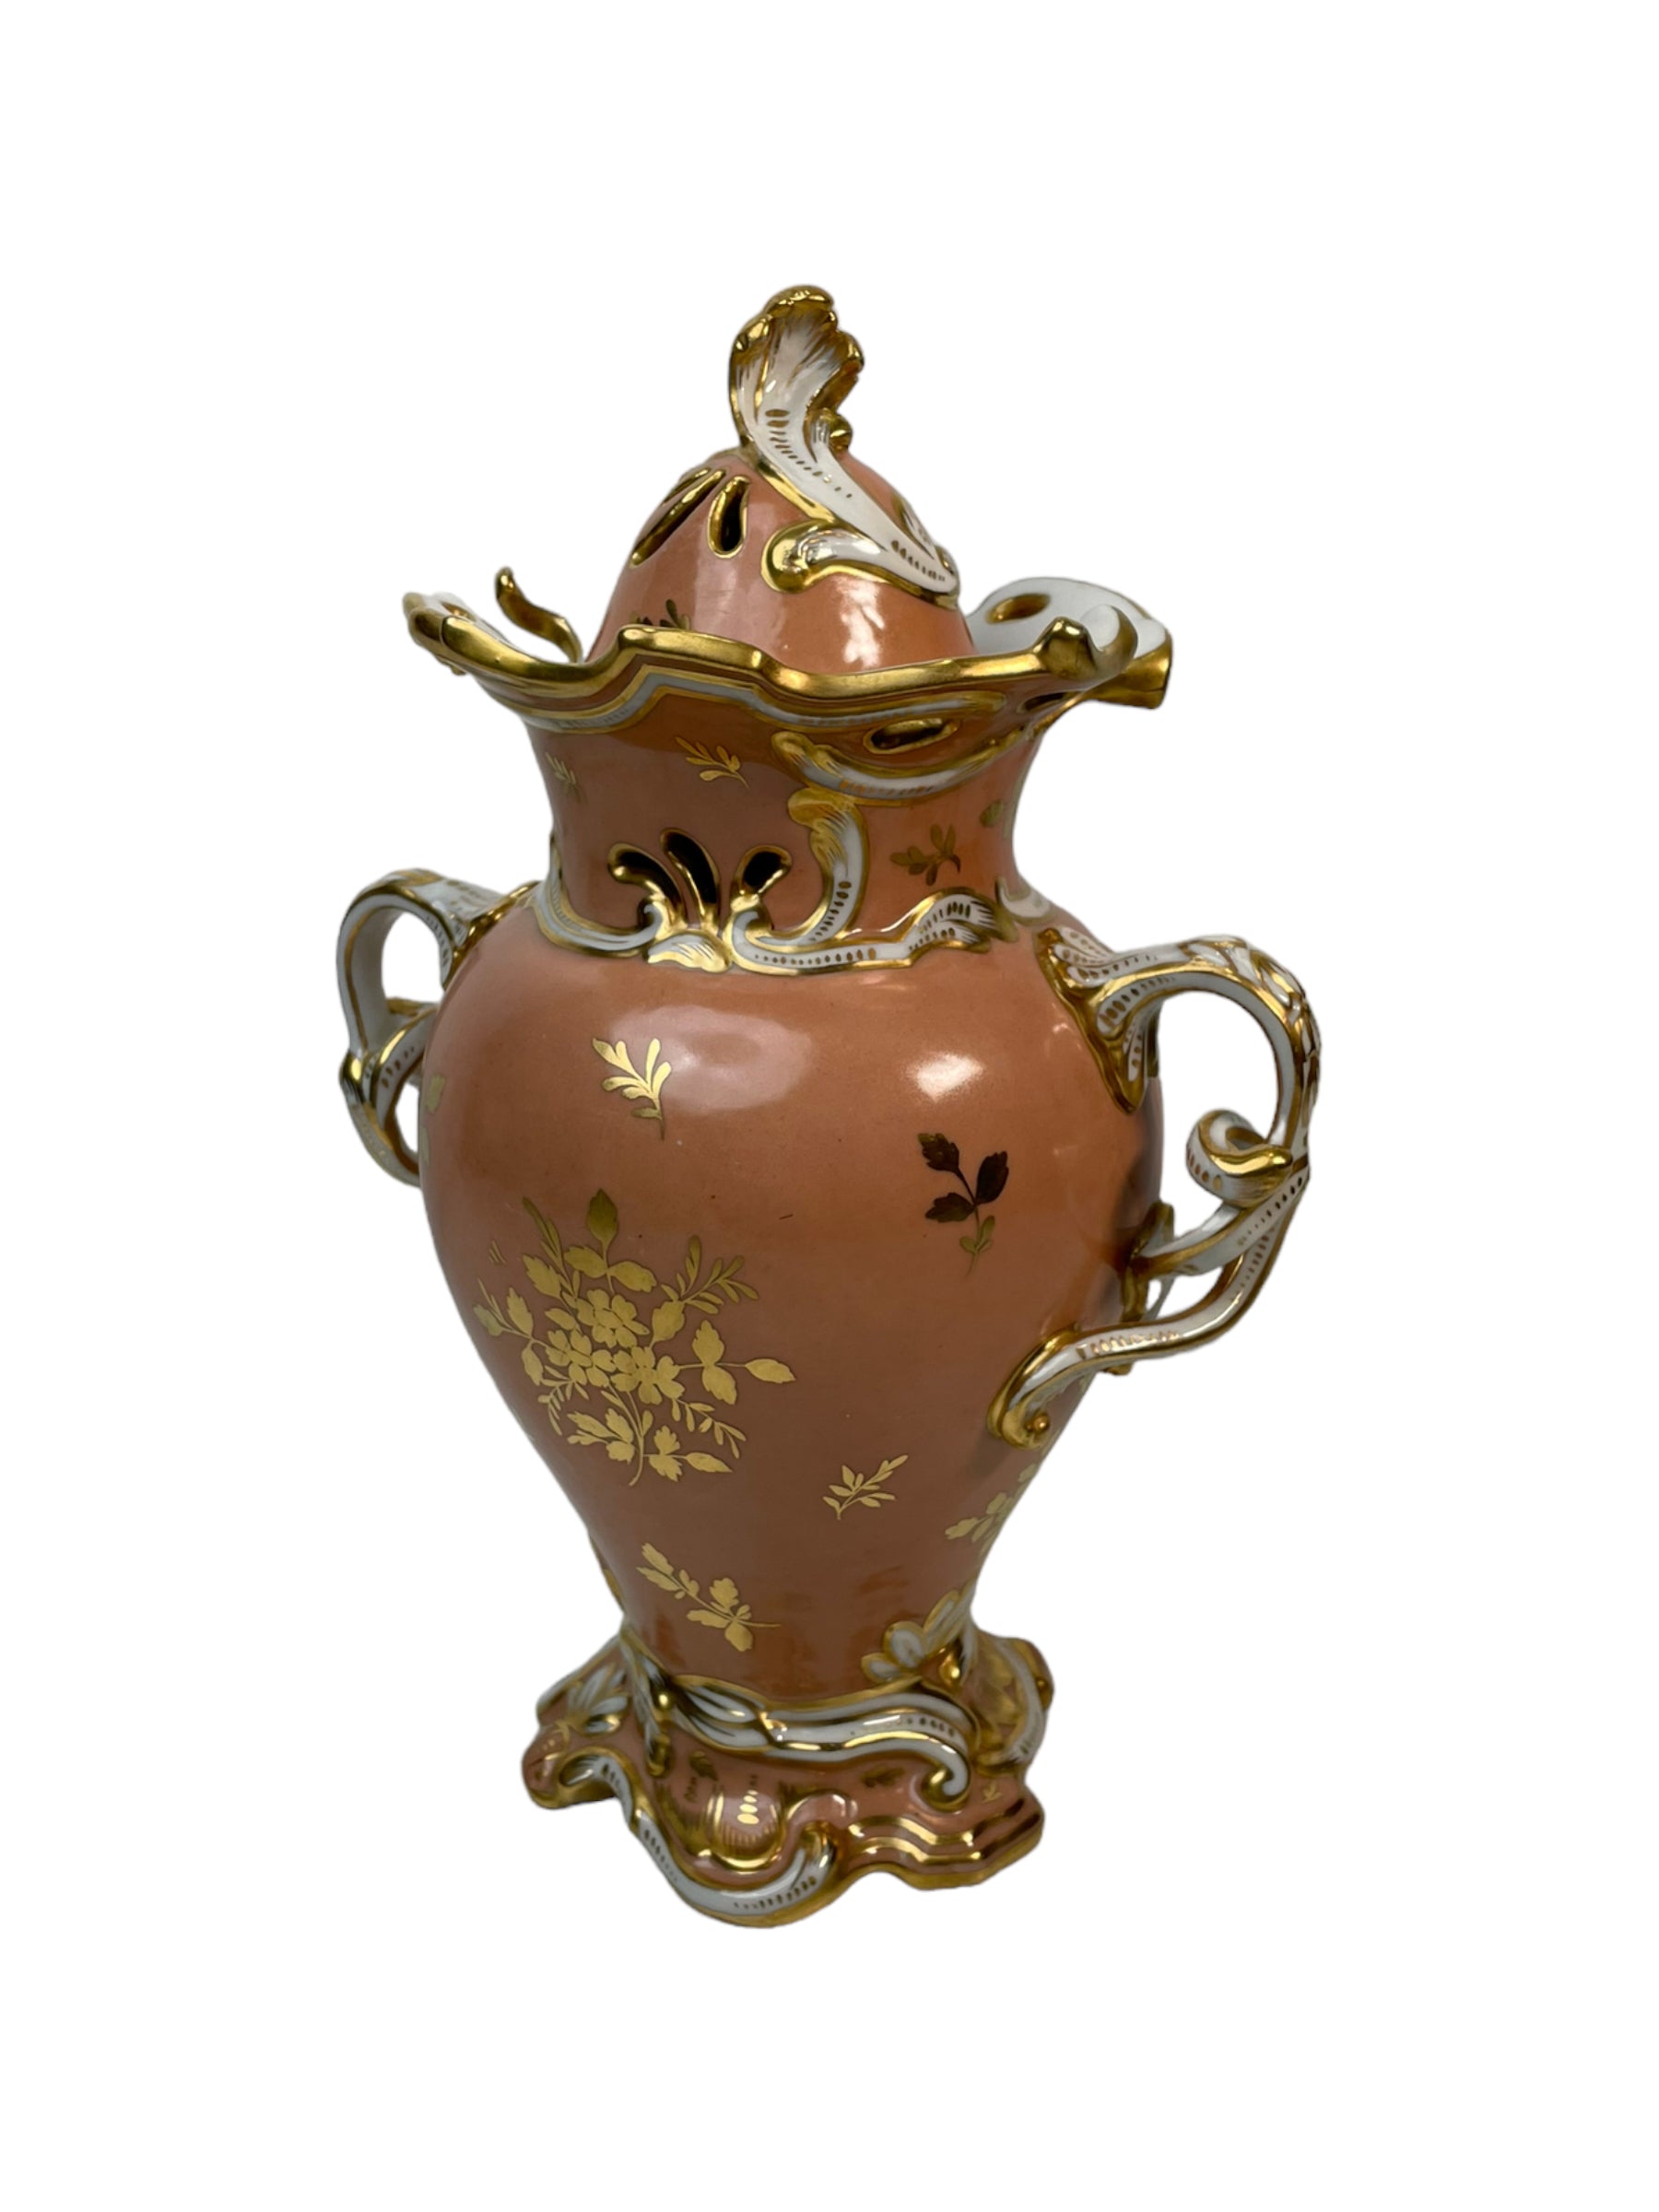 Lovely Pink Vase - Made in France